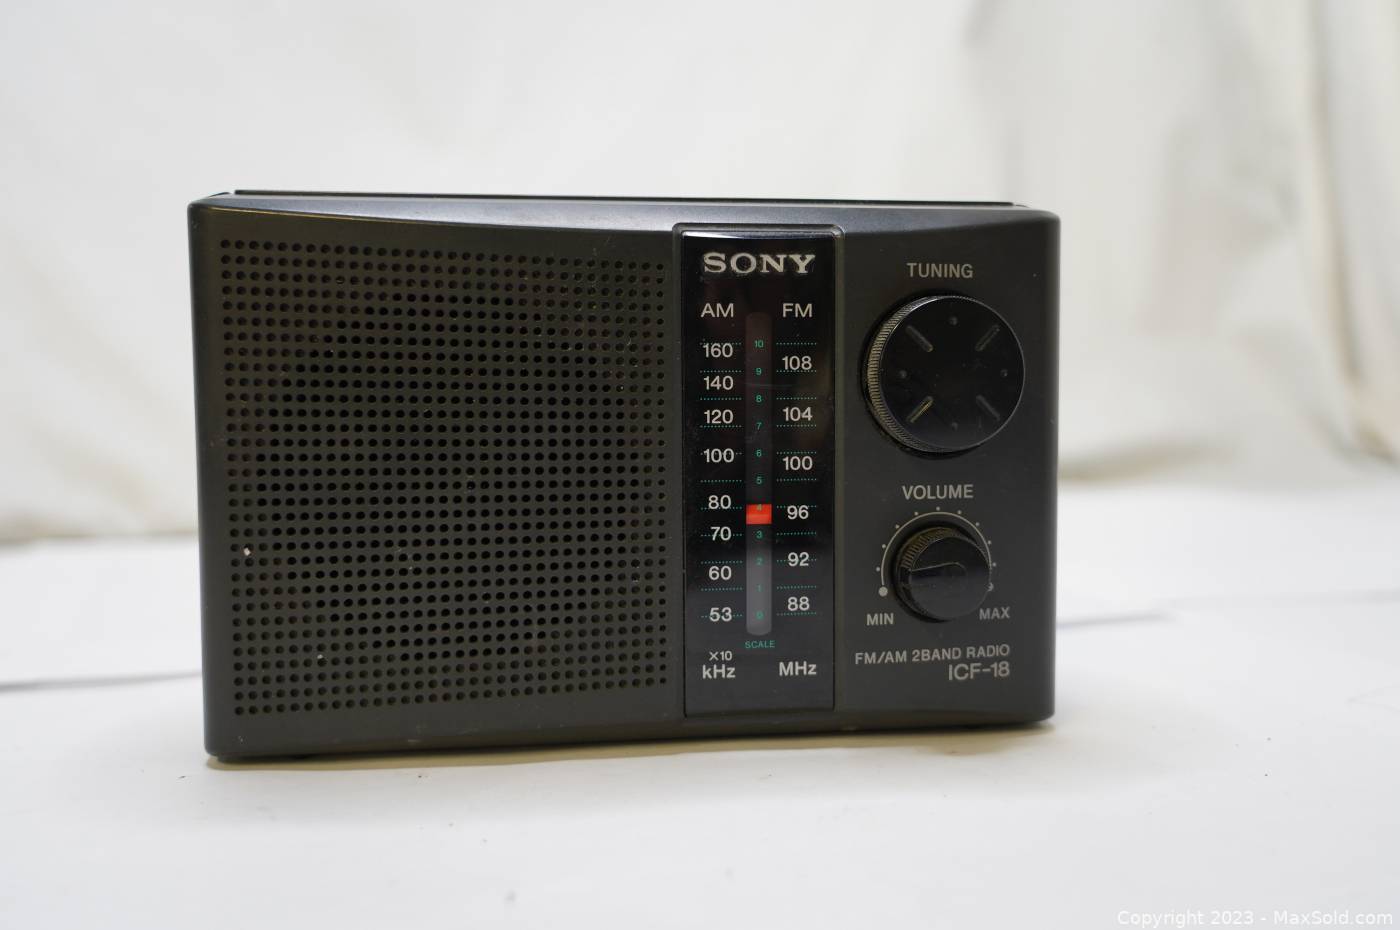 RADIO SONY F18 (5 BANDAS ) $40.000 📻 - TechnoSound Digital